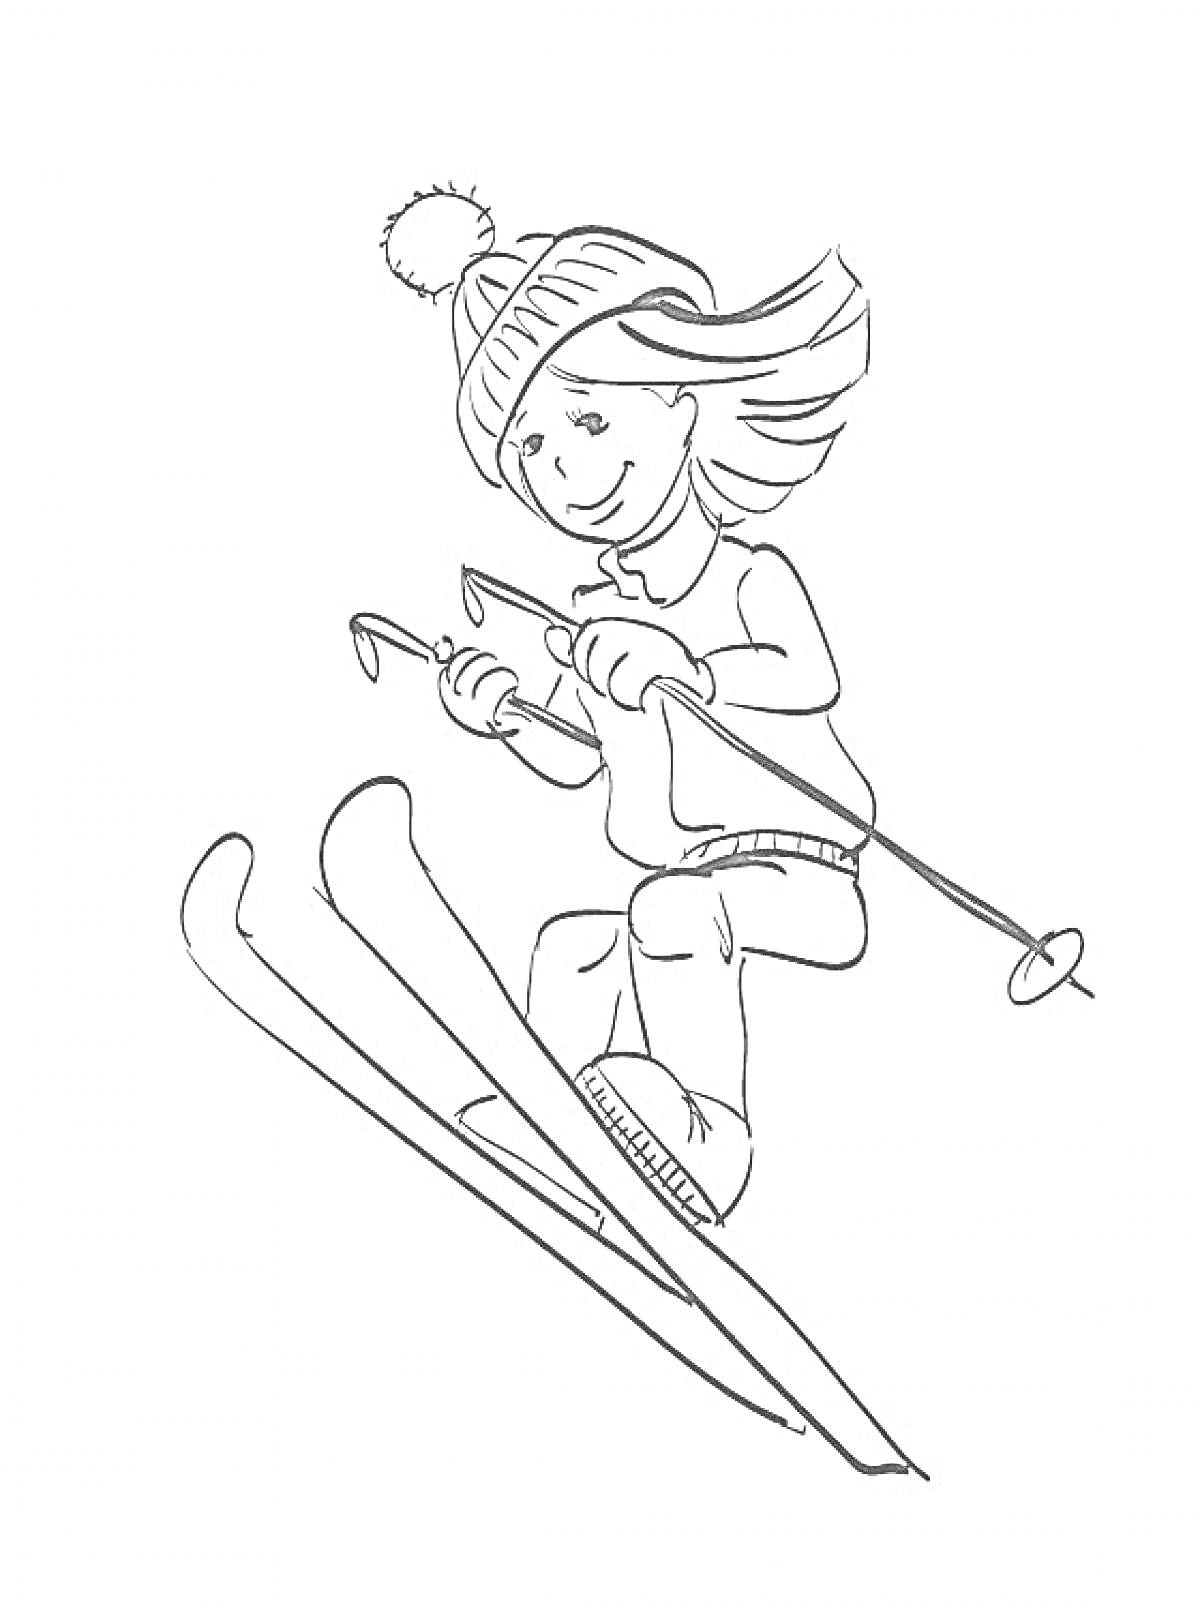 Раскраска Ребёнок на лыжах в зимней шапке